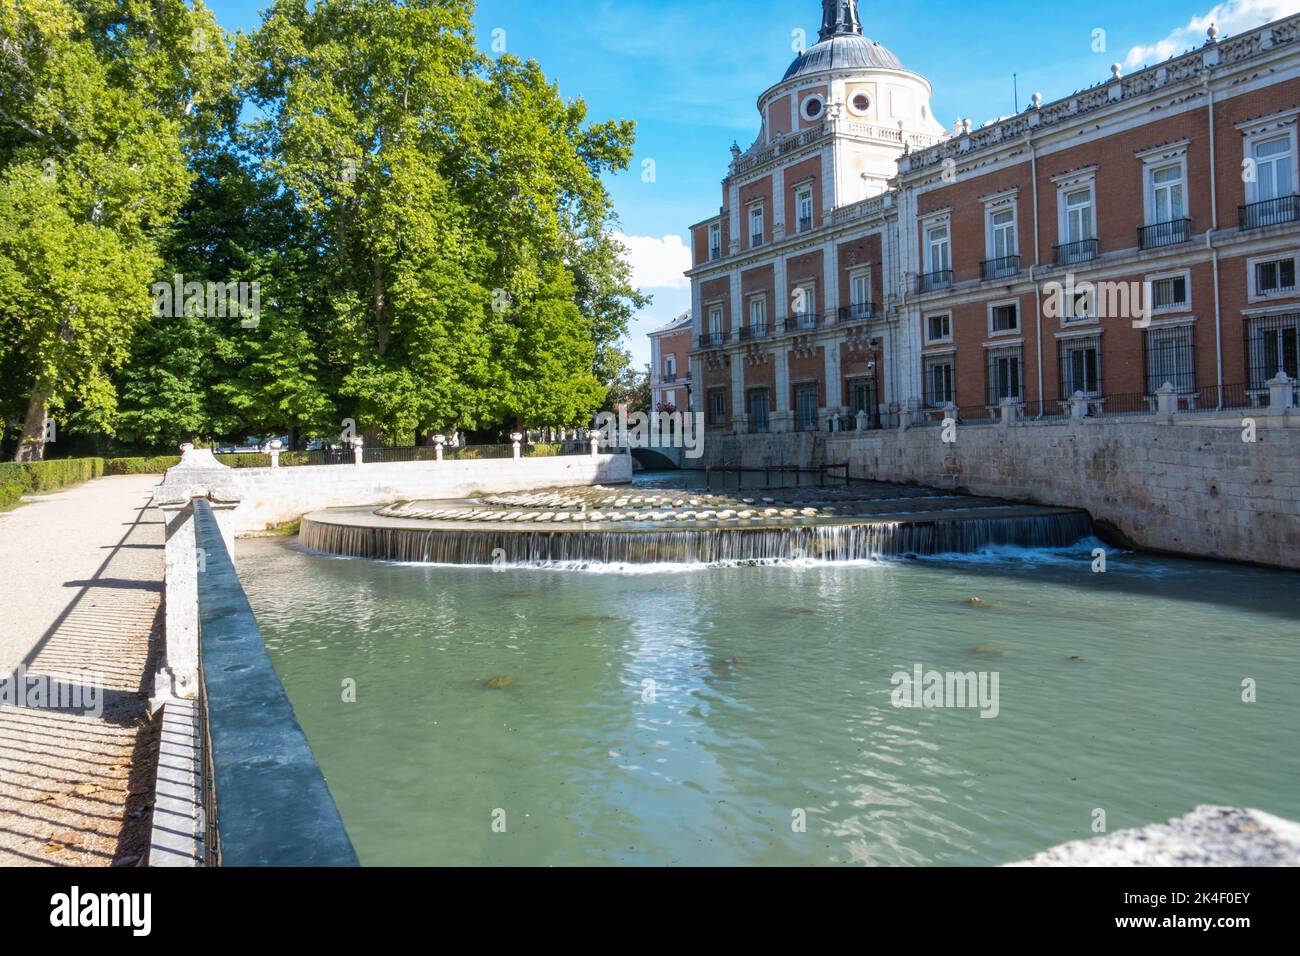 Le Palais Royal d'Aranjuez, une ancienne résidence royale espagnole avec détail de fontaine Banque D'Images